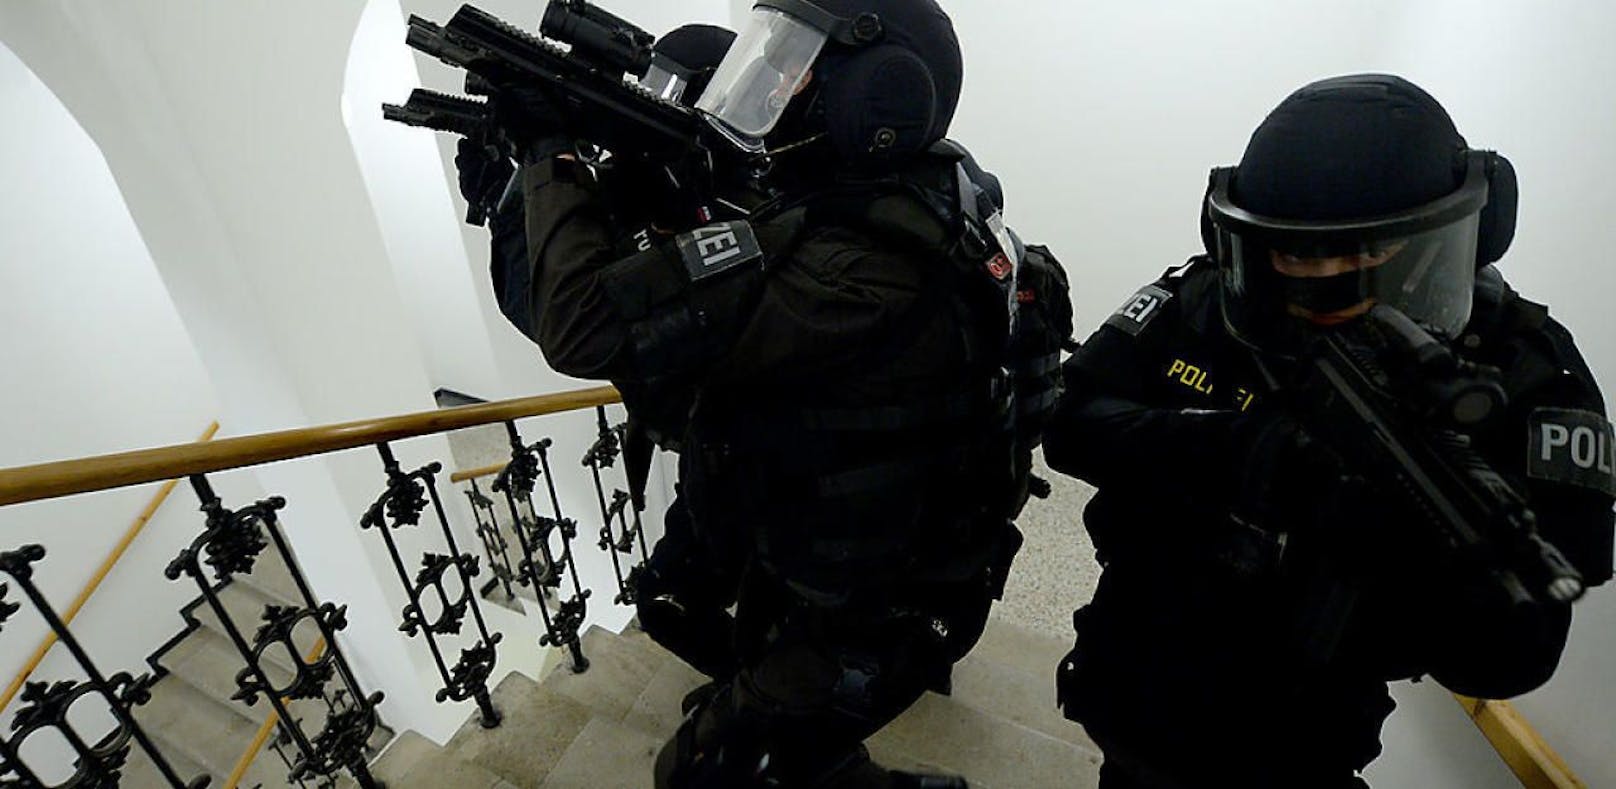 Polizisten der Sondereinheit &quot;Einsatzkommando Cobra&quot; in einer Übungssituation. (Symbolbild)